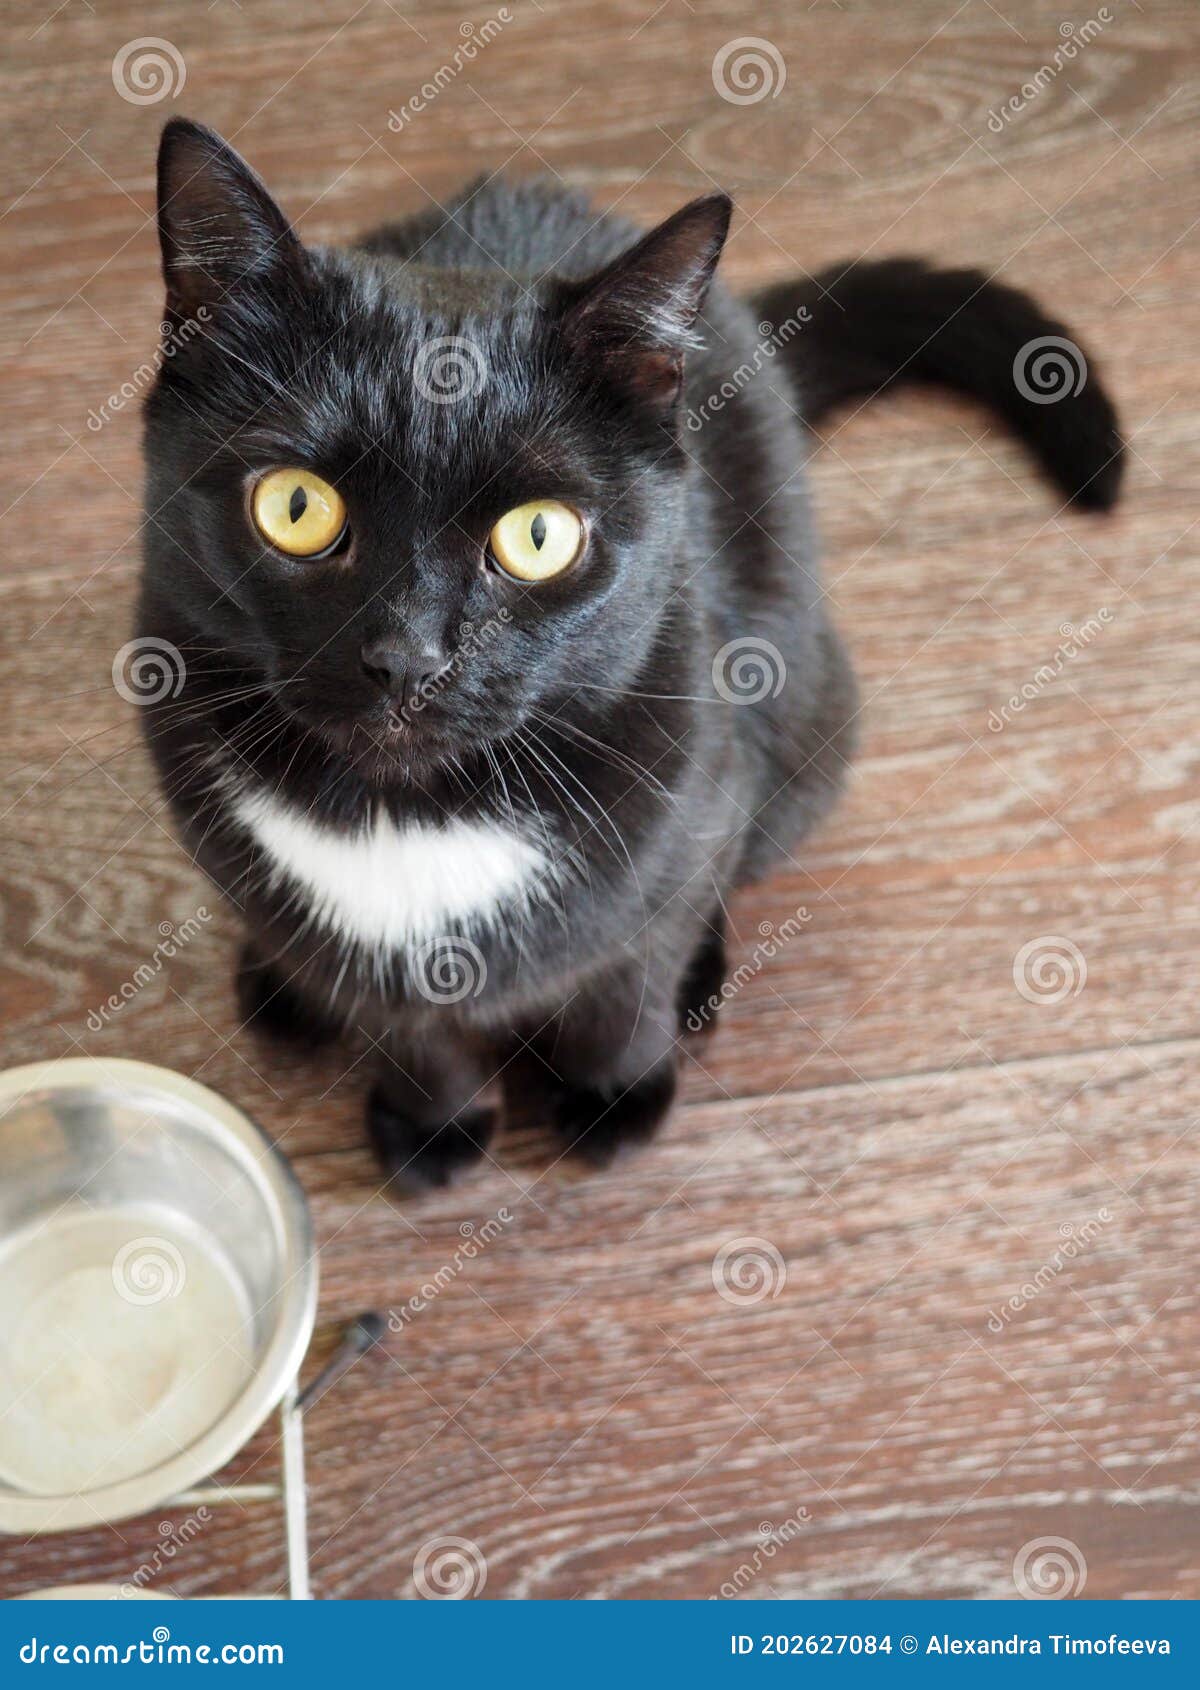 Simpatico gatto nero con occhi gialli coperta morbida per tutte le